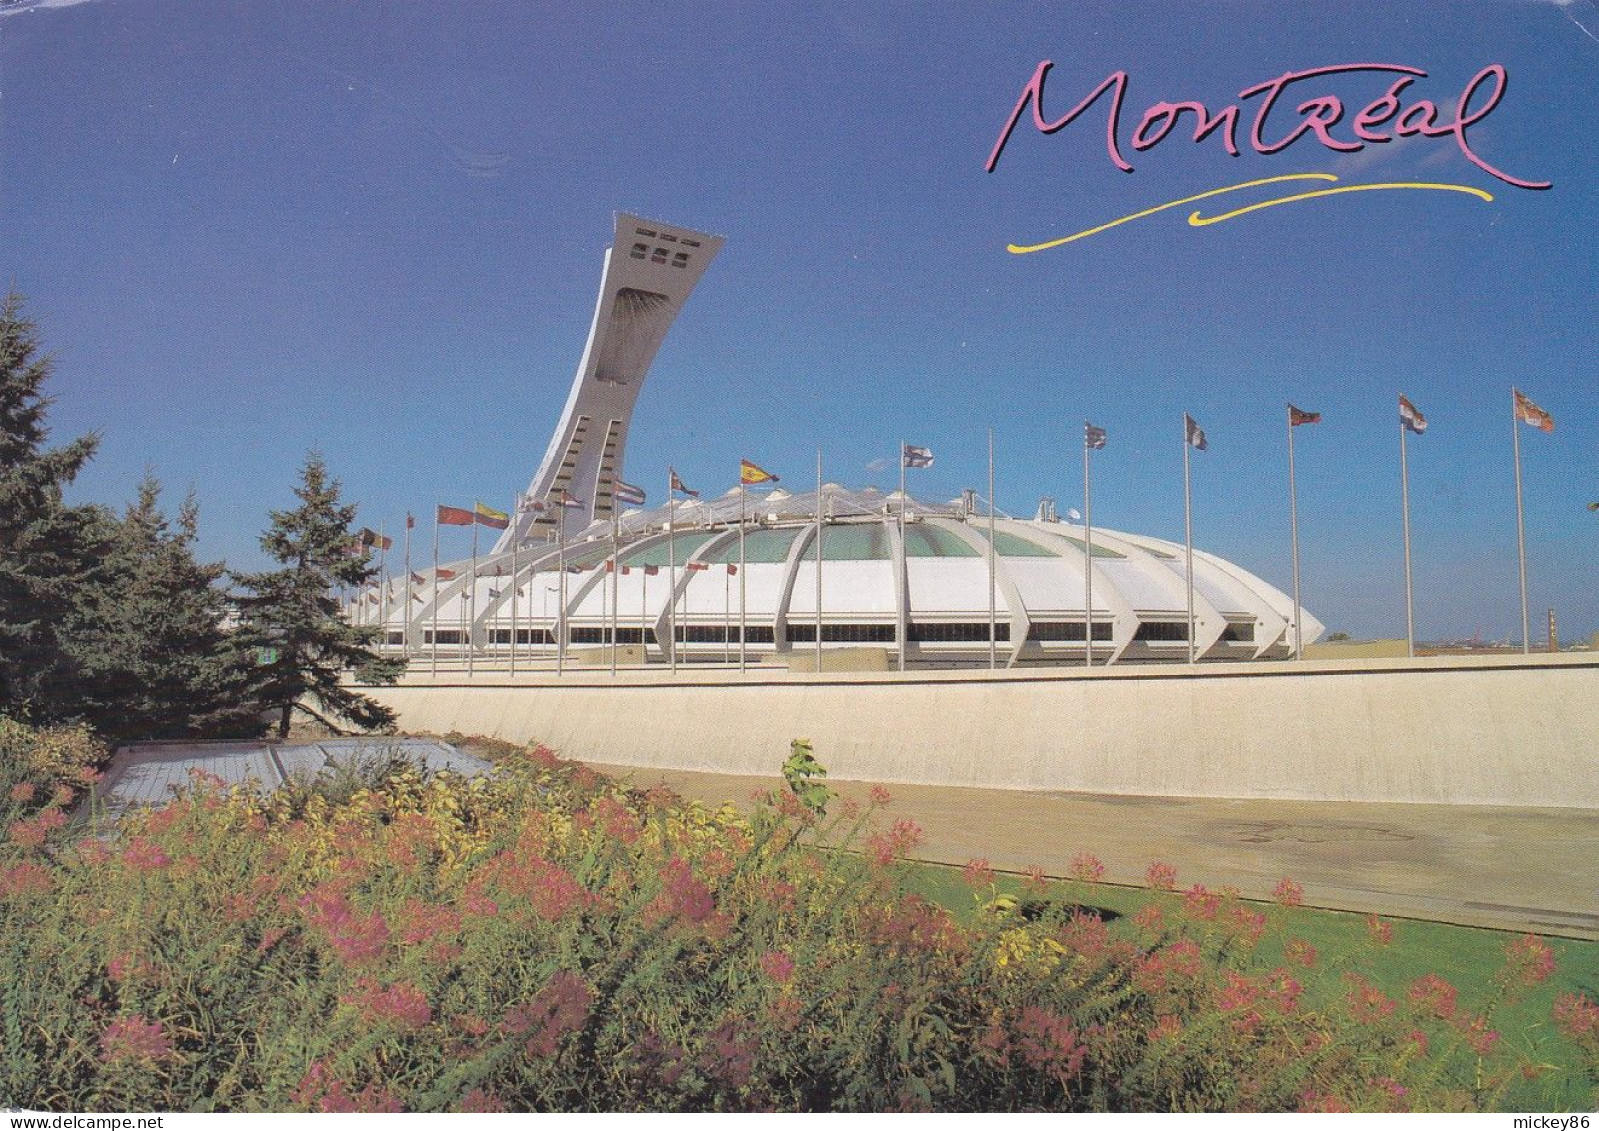 Canada-- MONTREAL --1998 --Le Stade Olympique ,foyer Des Expos De Montréal ...timbre...cachet - Stadi